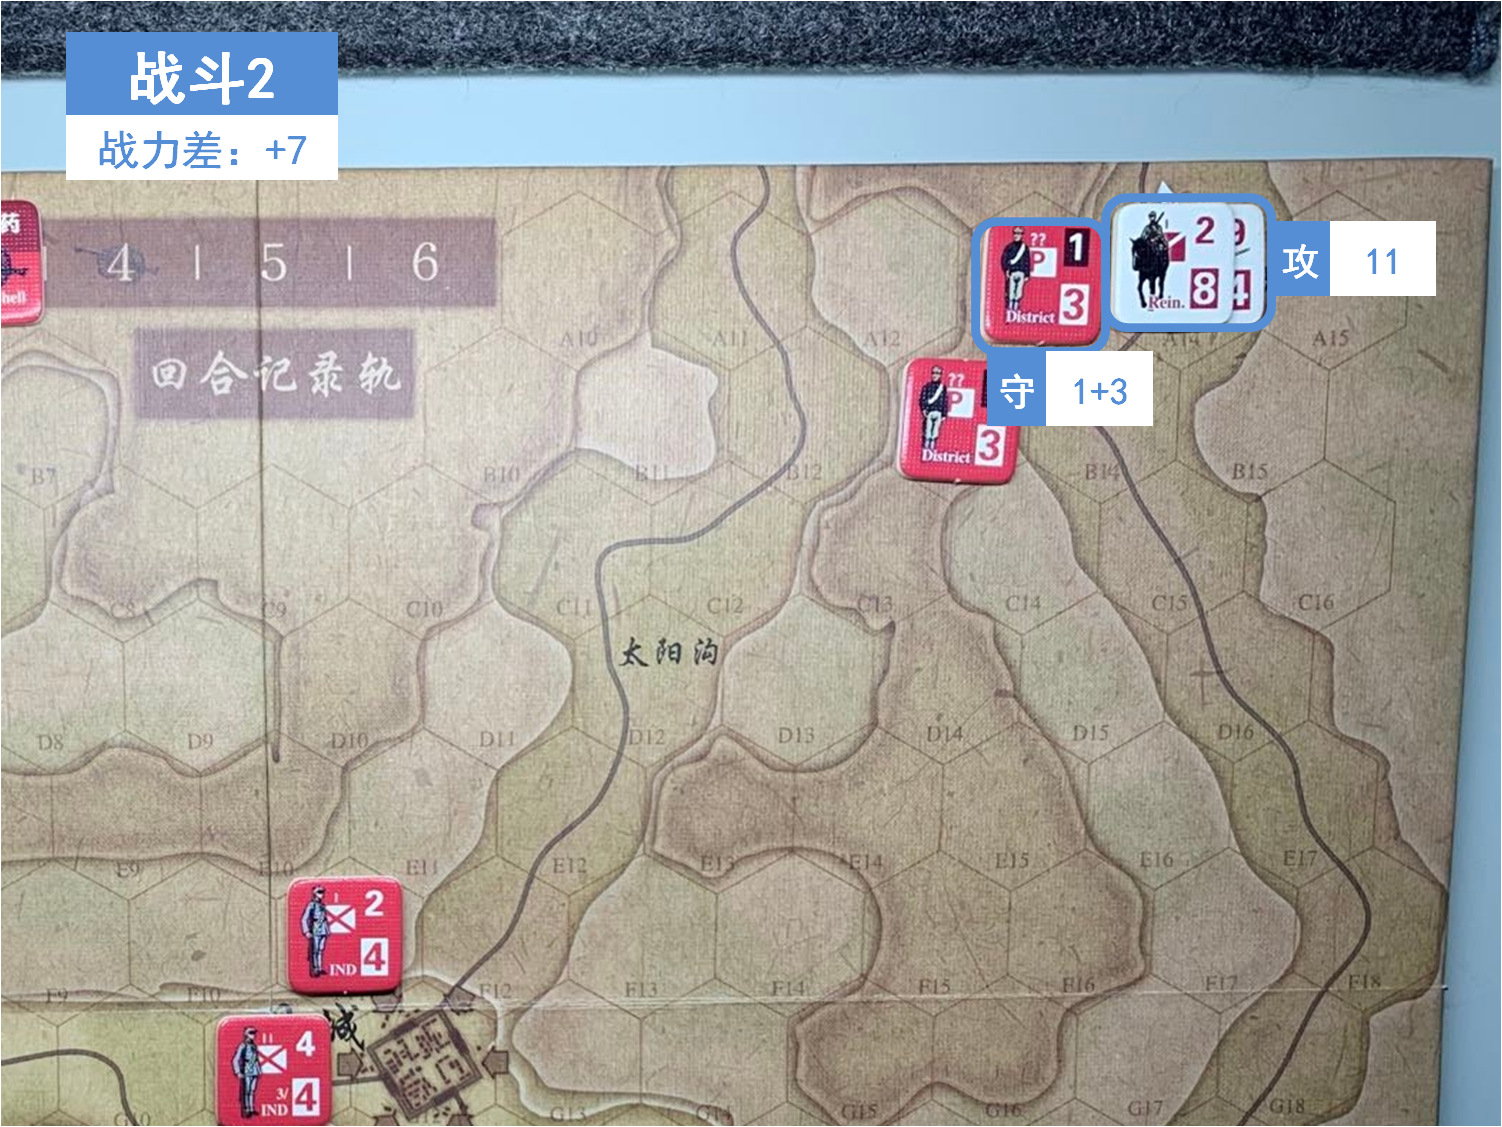 第一回合 日方战斗阶段 战斗2 战斗力差值